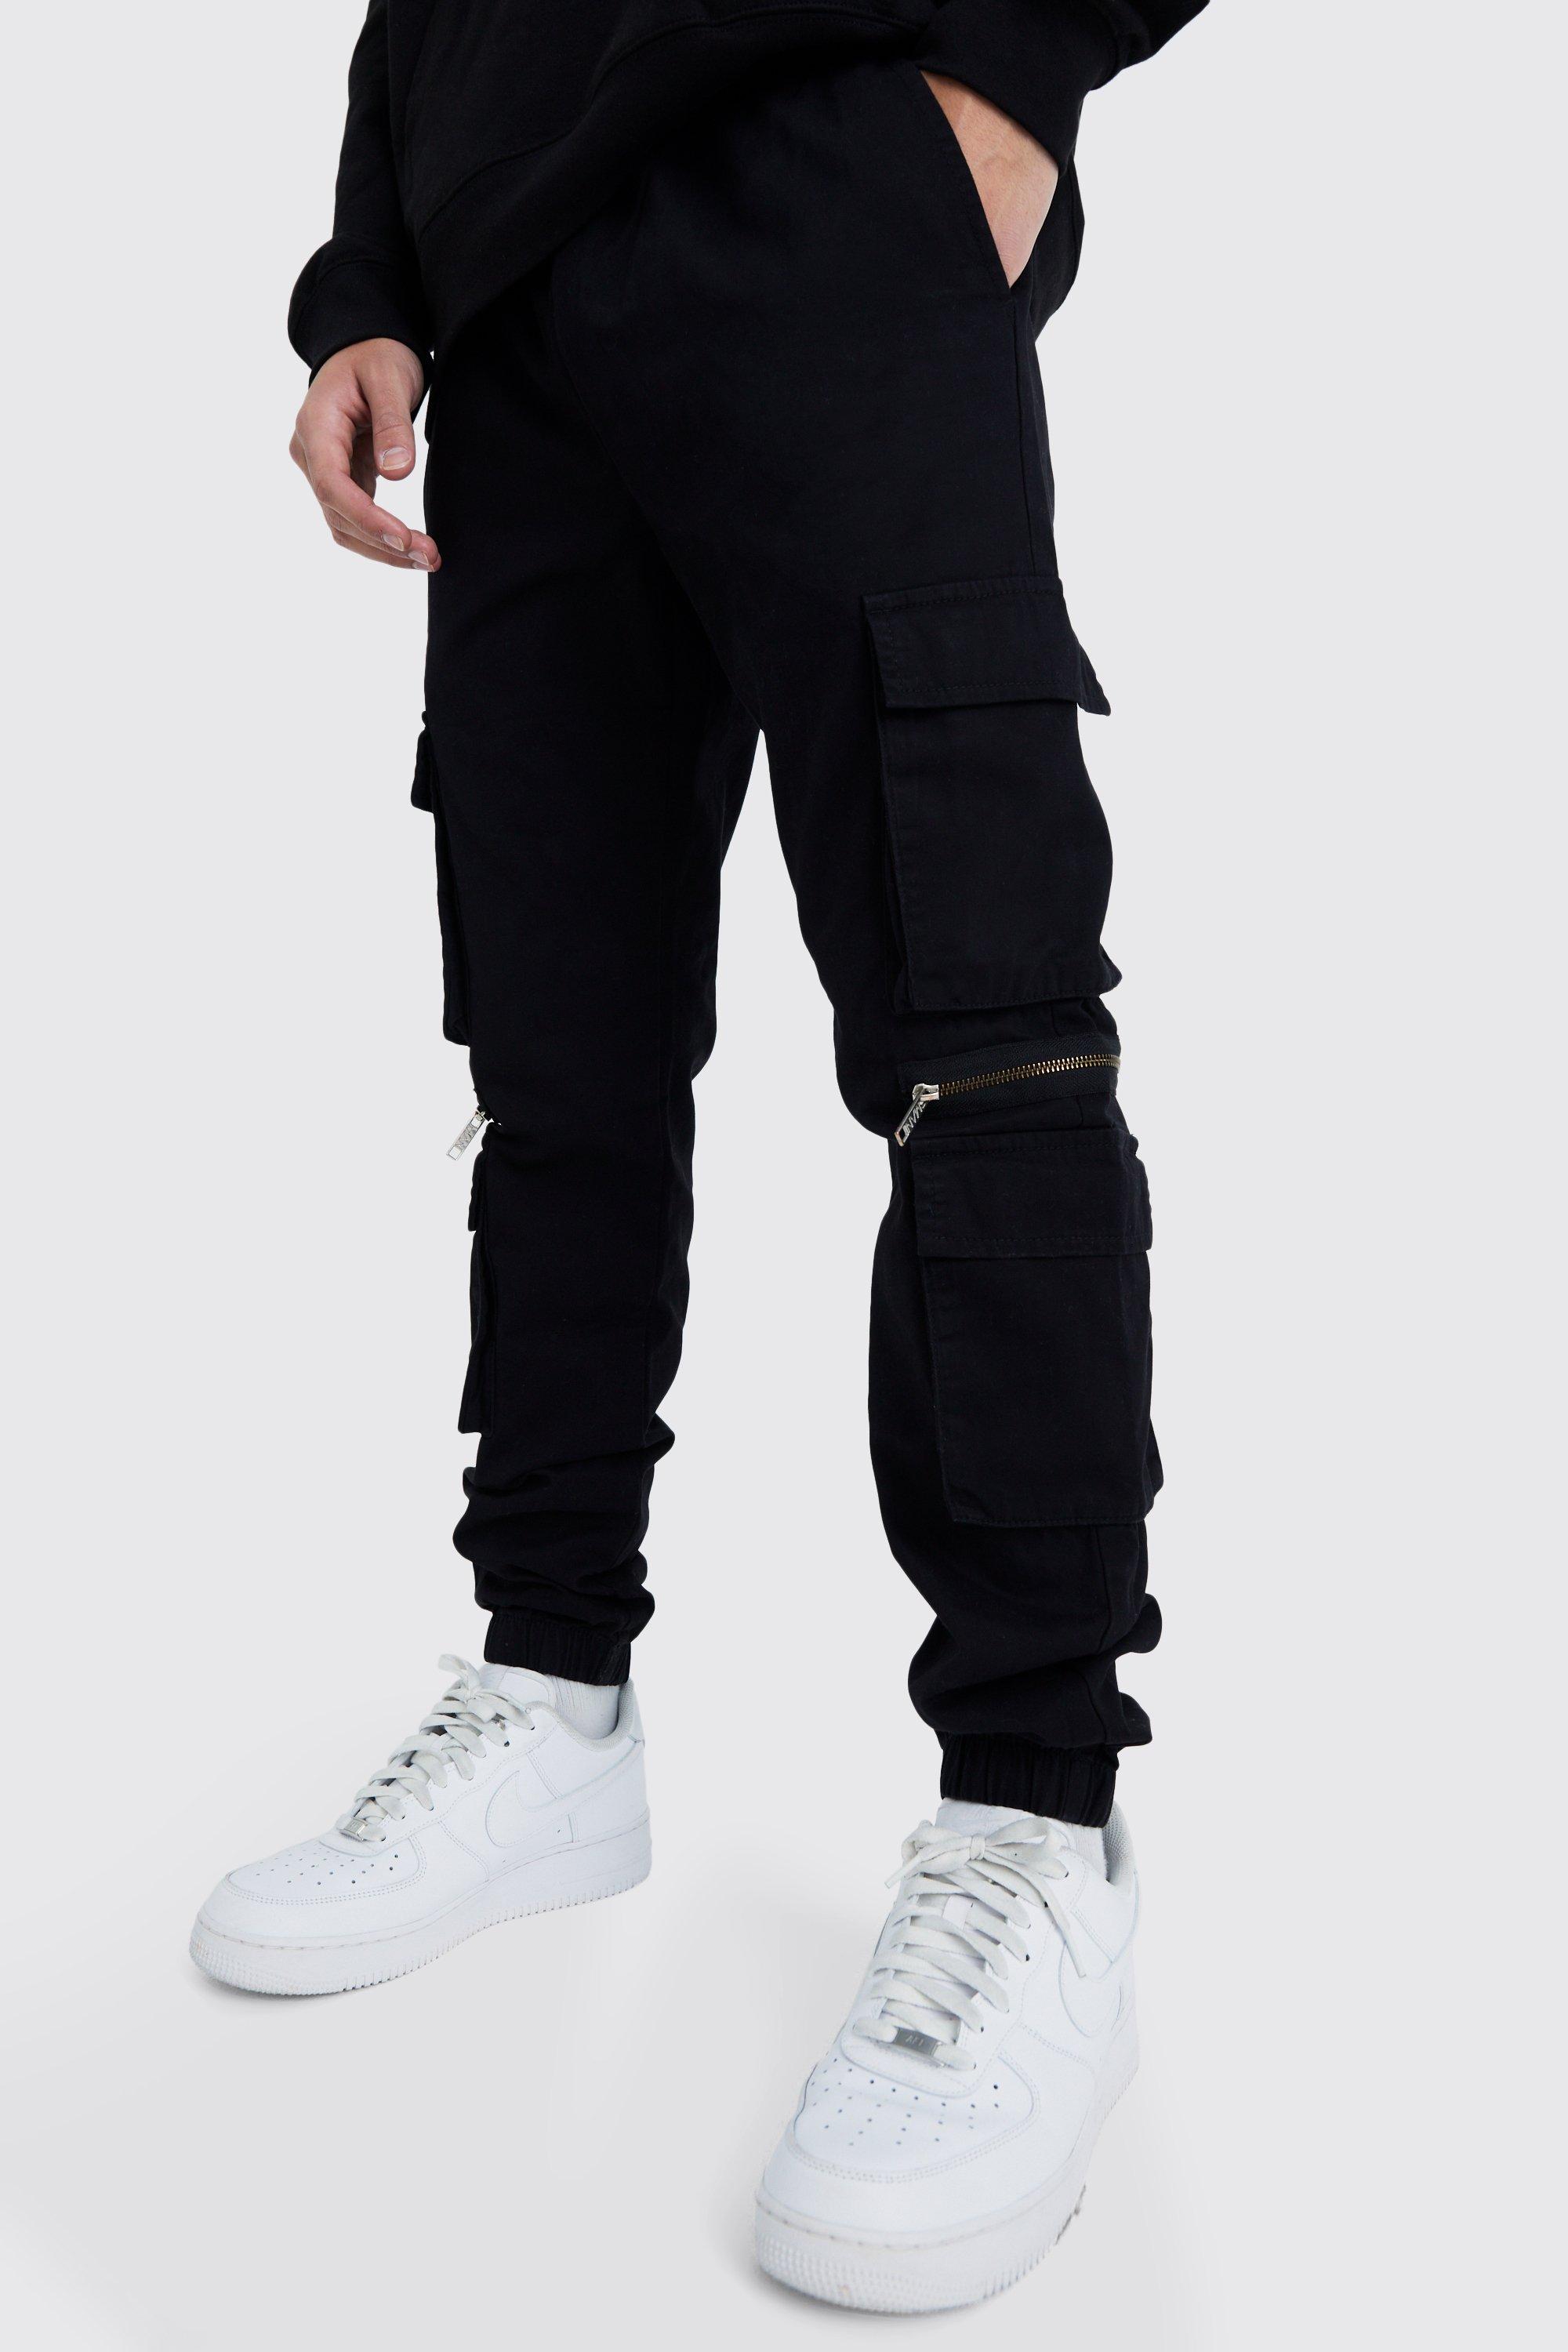 pantalon cargo à taille élastique et poches multiples homme - noir - xl, noir